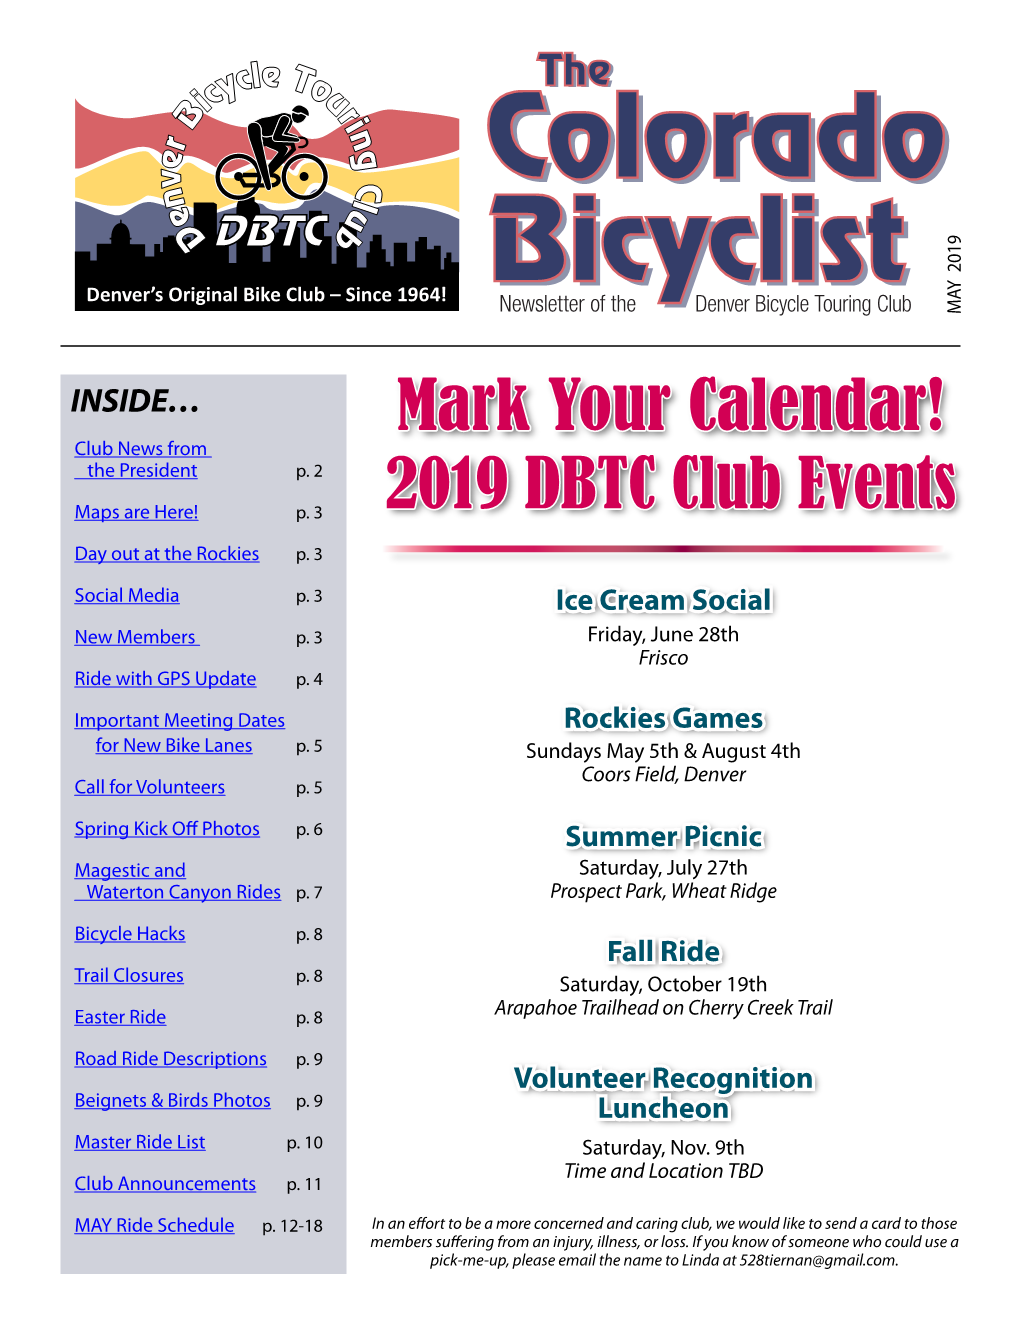 Mark Your Calendar! 2019 DBTC Club Events